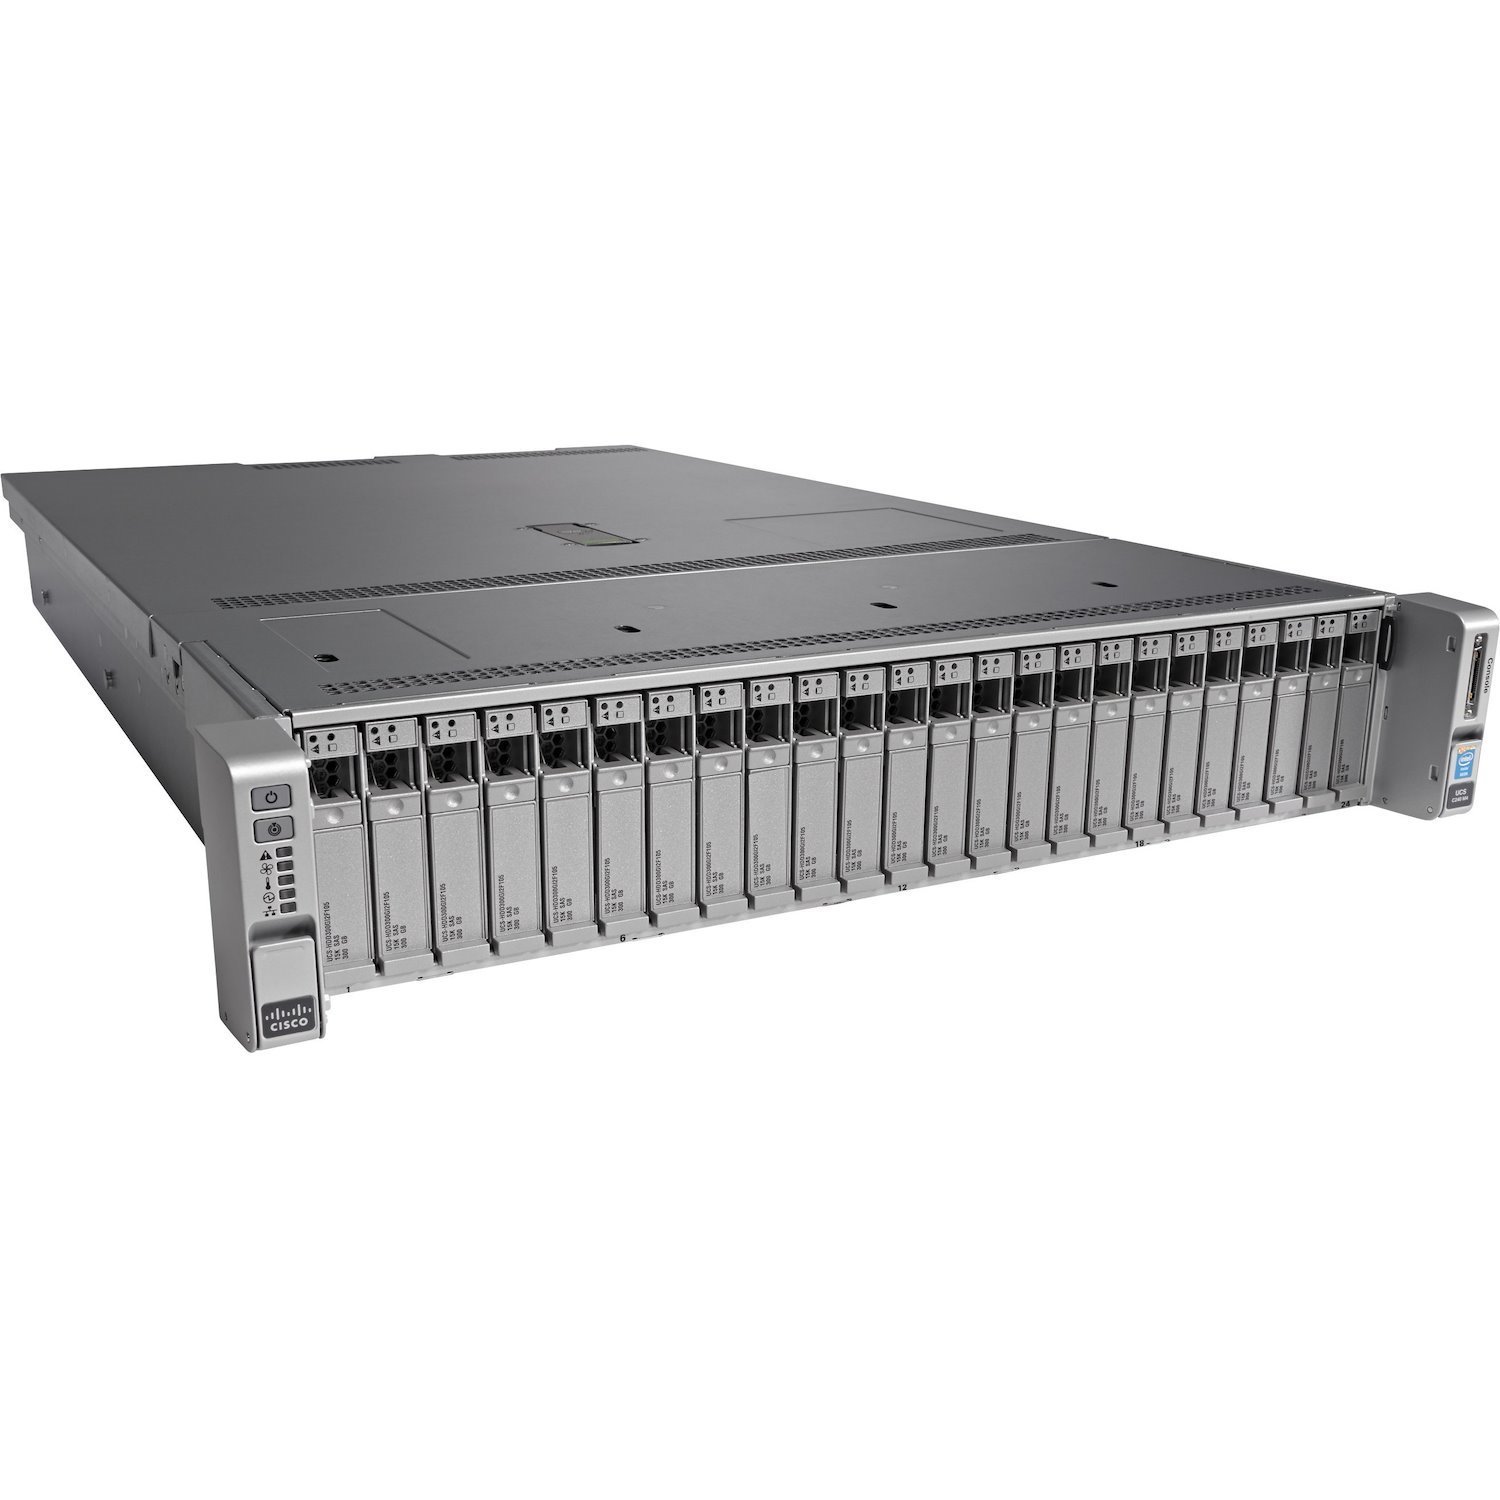 Cisco C240 M4 2U Small Form Factor Server - 2 x Intel Xeon E5-2640 v3 2.60 GHz - 128 GB RAM - Serial ATA/600 Controller